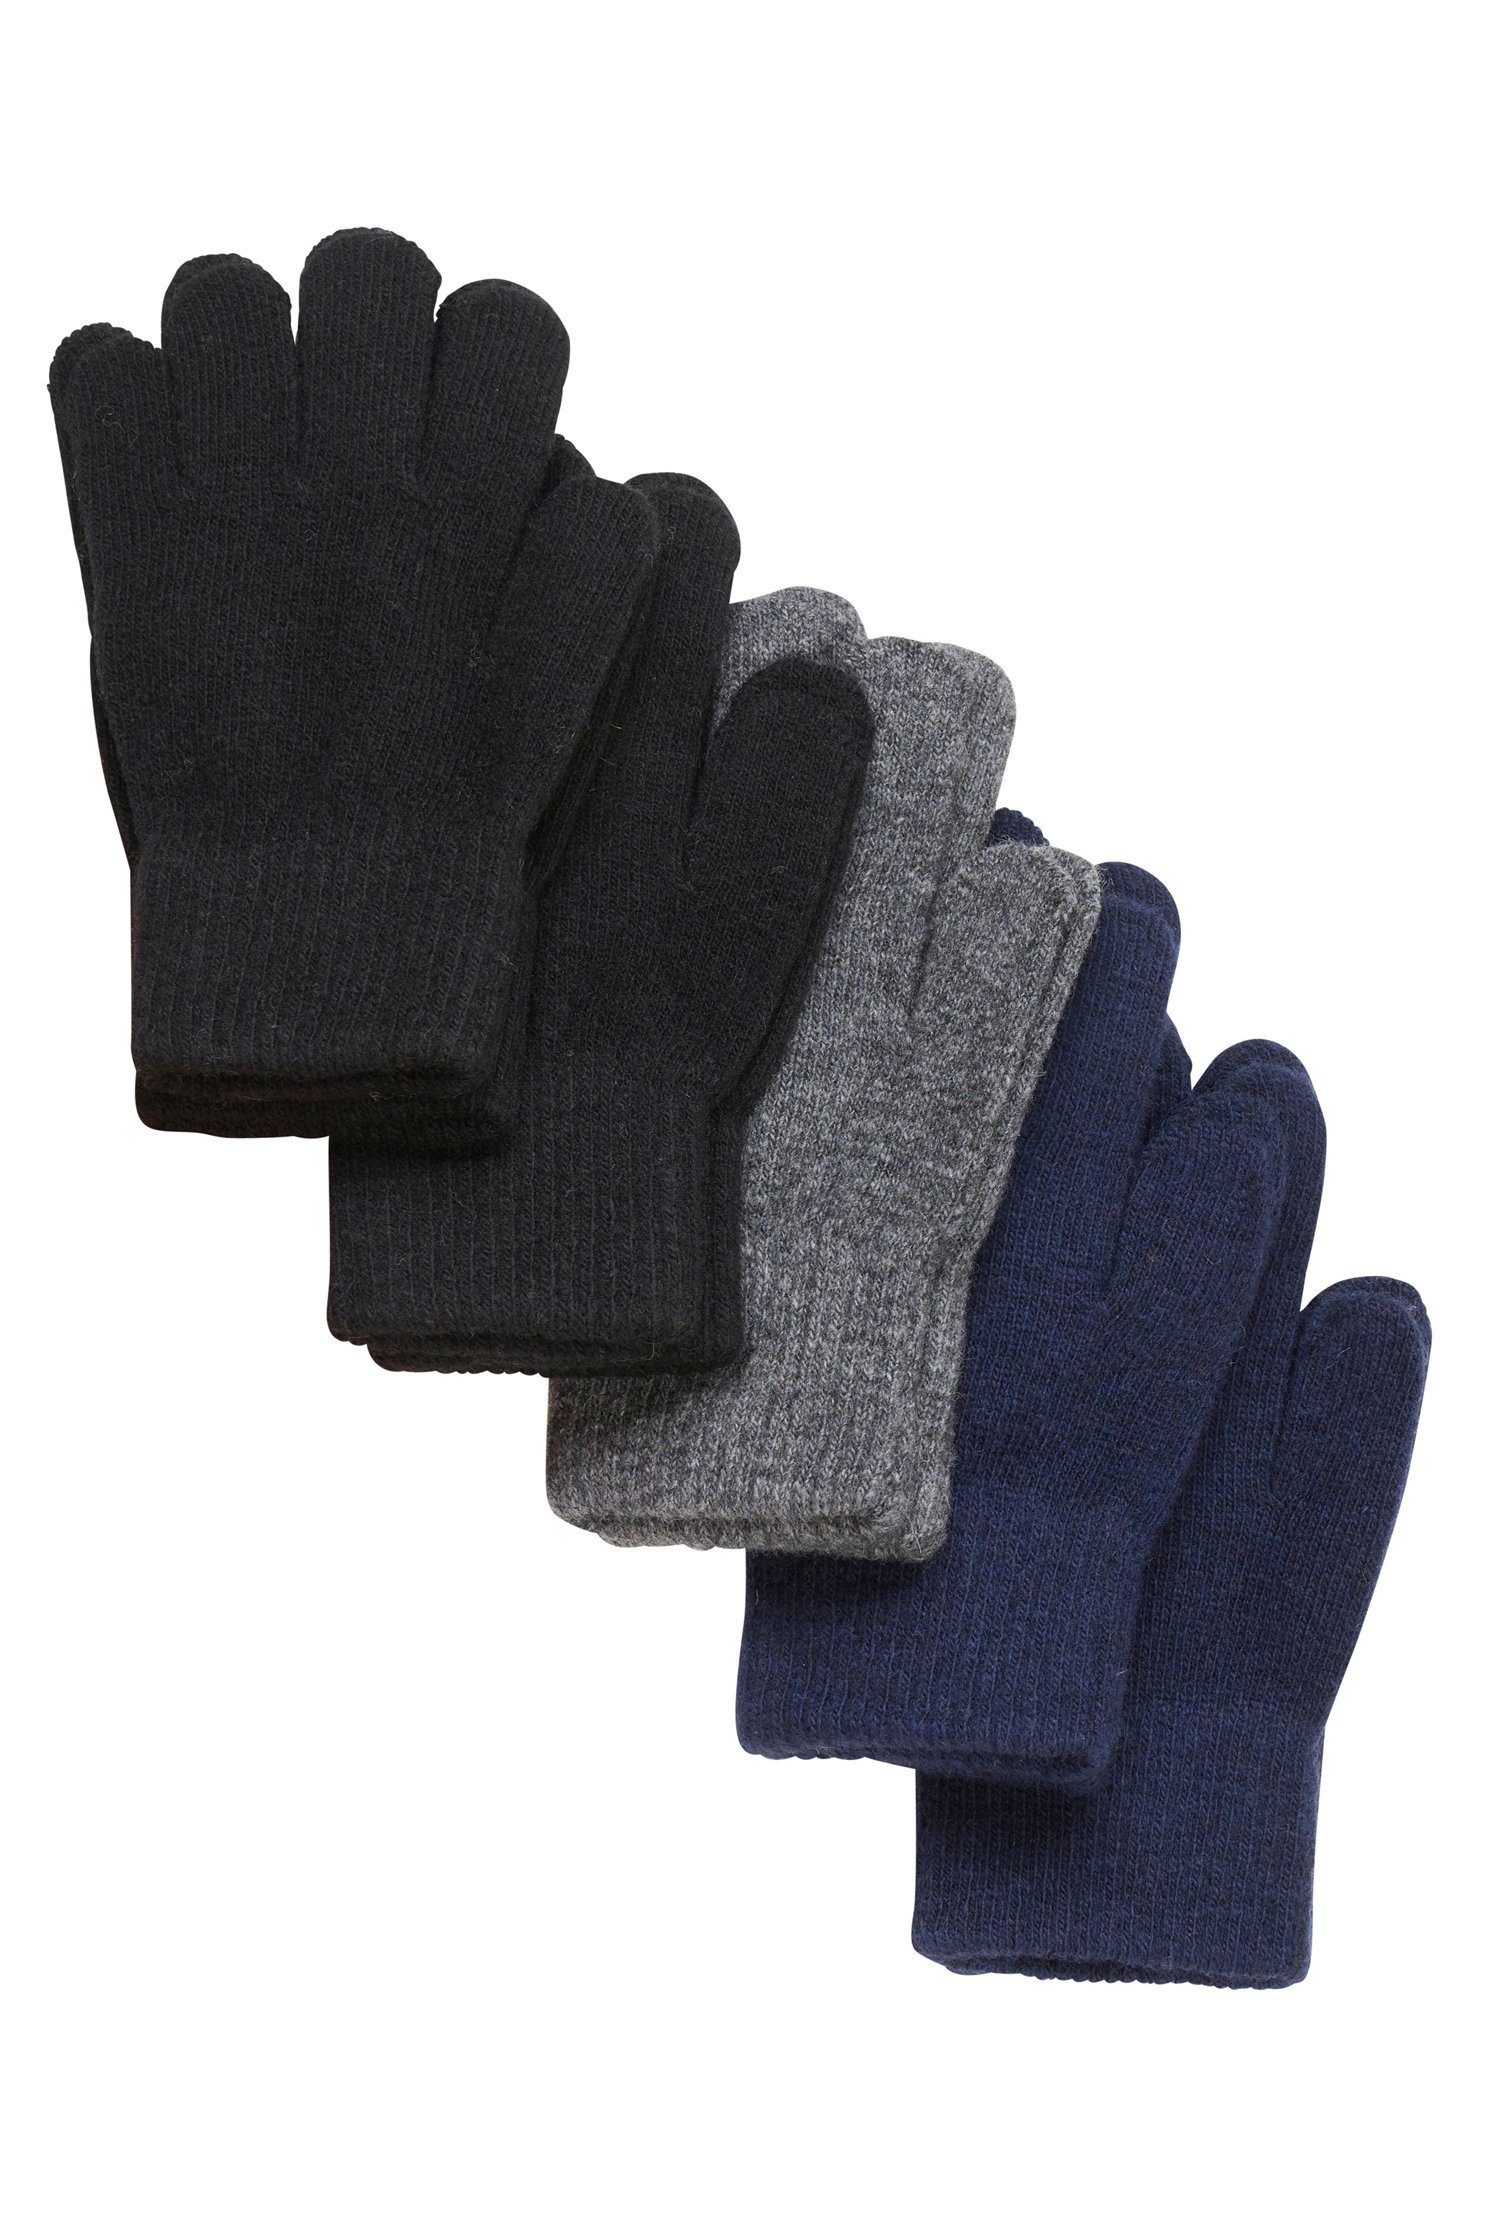 CeLaVi Strickhandschuhe CEMagic Gloves 5-pack - 6193 (5er Pack)